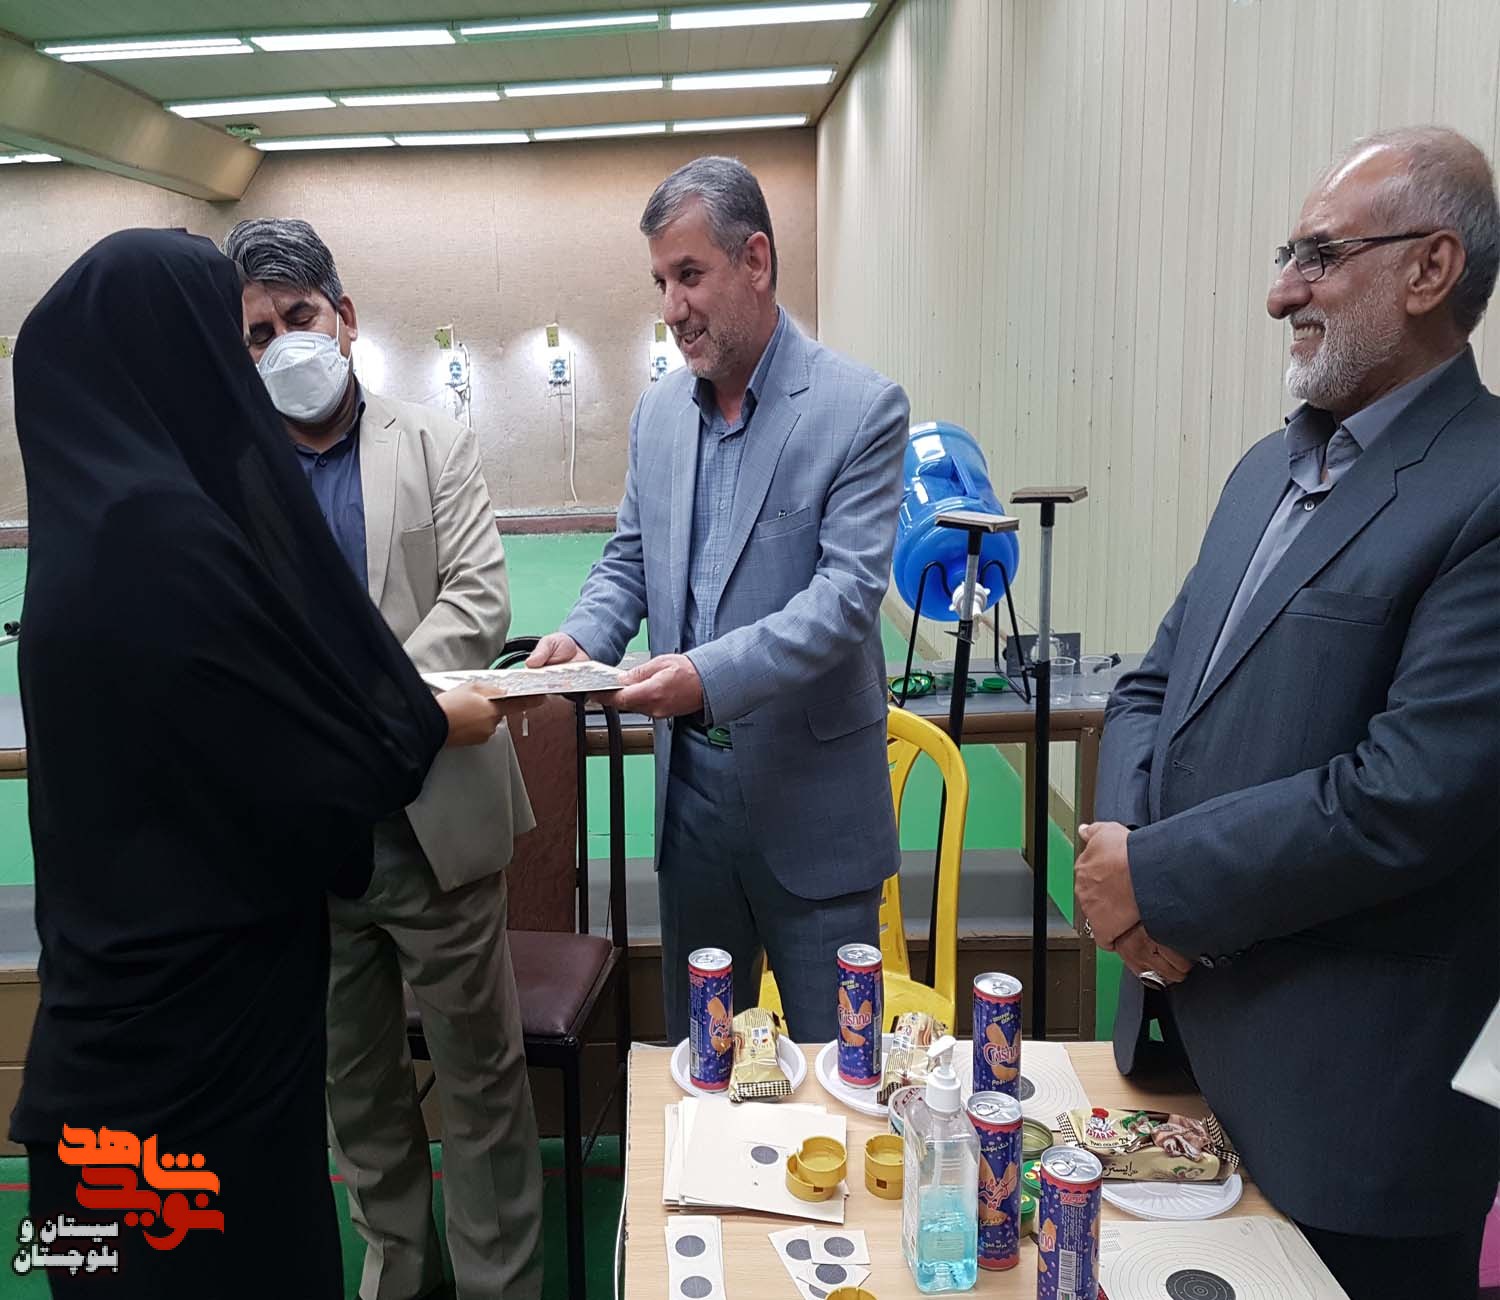 برگزاری مسابقه تیراندازی ویژه بانوان شاهد و ایثارگر در شهرستان زاهدان